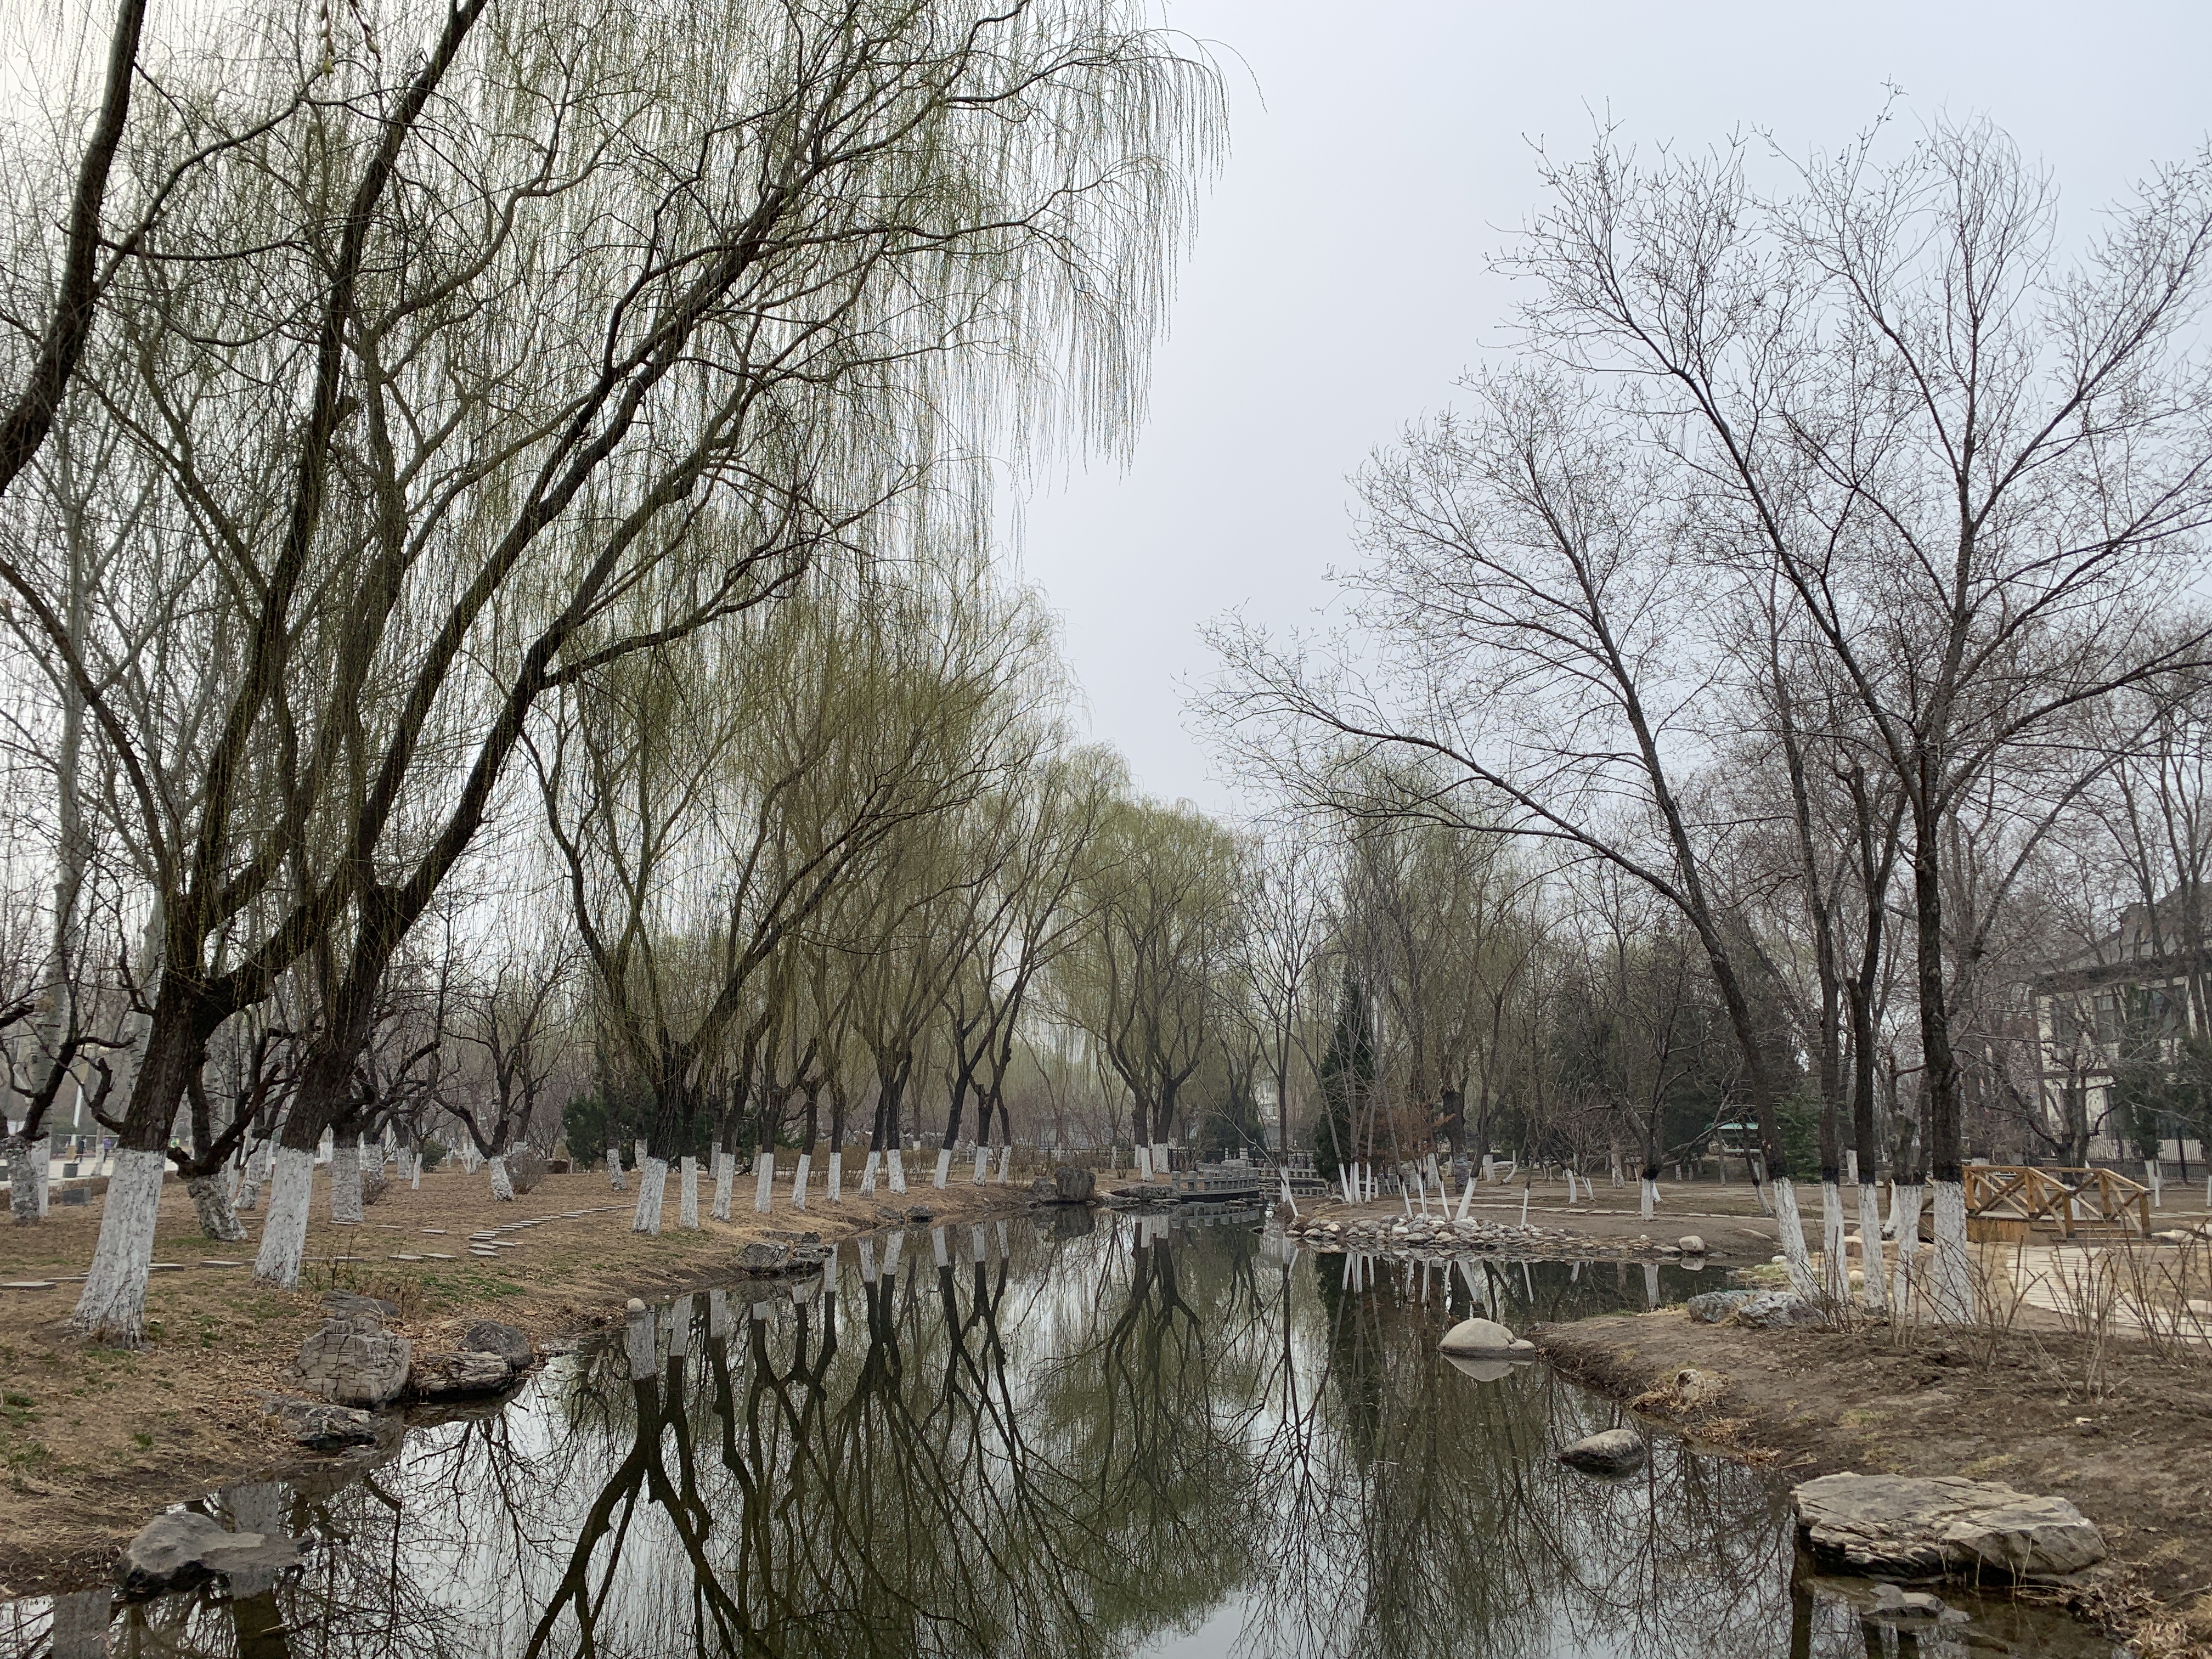 西沽公园，这次也是因为桃花堤公园由于疫情限制了开园时间，故先来这里转一转